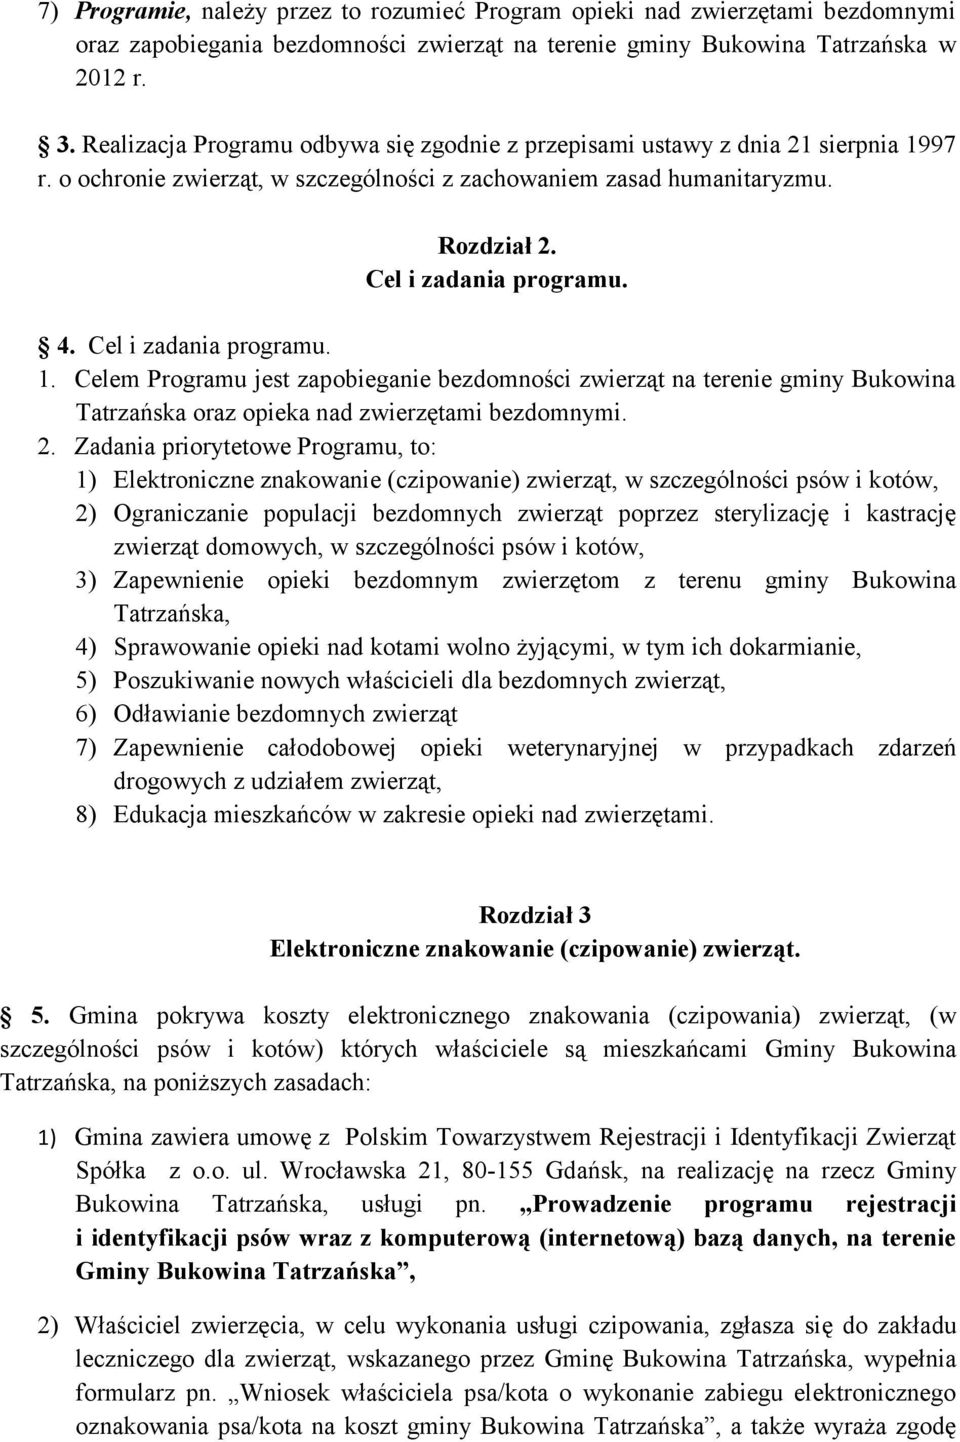 Cel i zadania programu. 1. Celem Programu jest zapobieganie bezdomności zwierząt na terenie gminy Bukowina Tatrzańska oraz opieka nad zwierzętami bezdomnymi. 2.